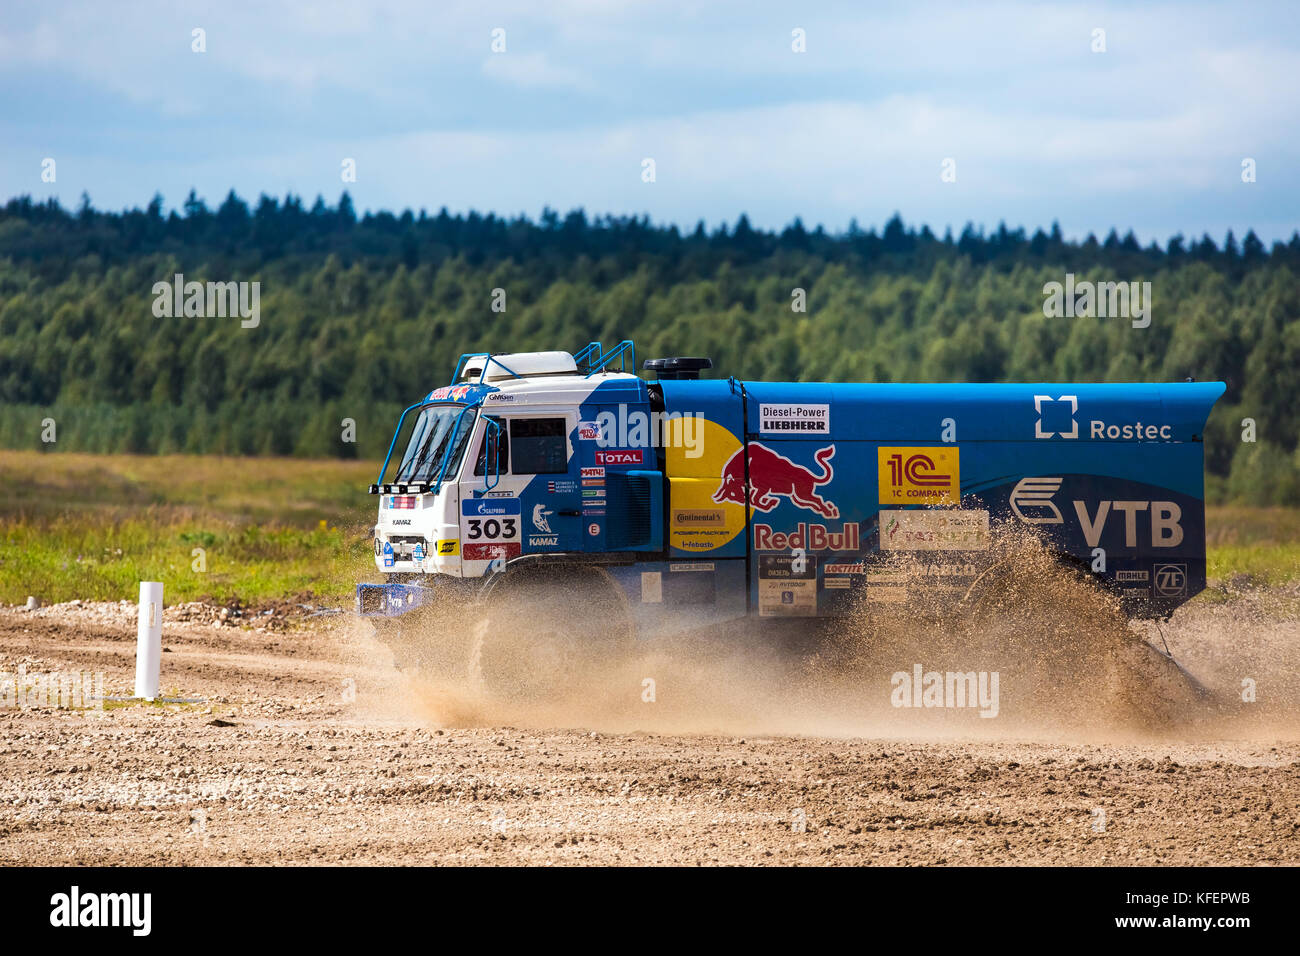 Moskau, Russland - August 2017: Leistung Der kamaz-master Team Truck auf internationale militärische Forum in der Region Moskau, Russland Stockfoto